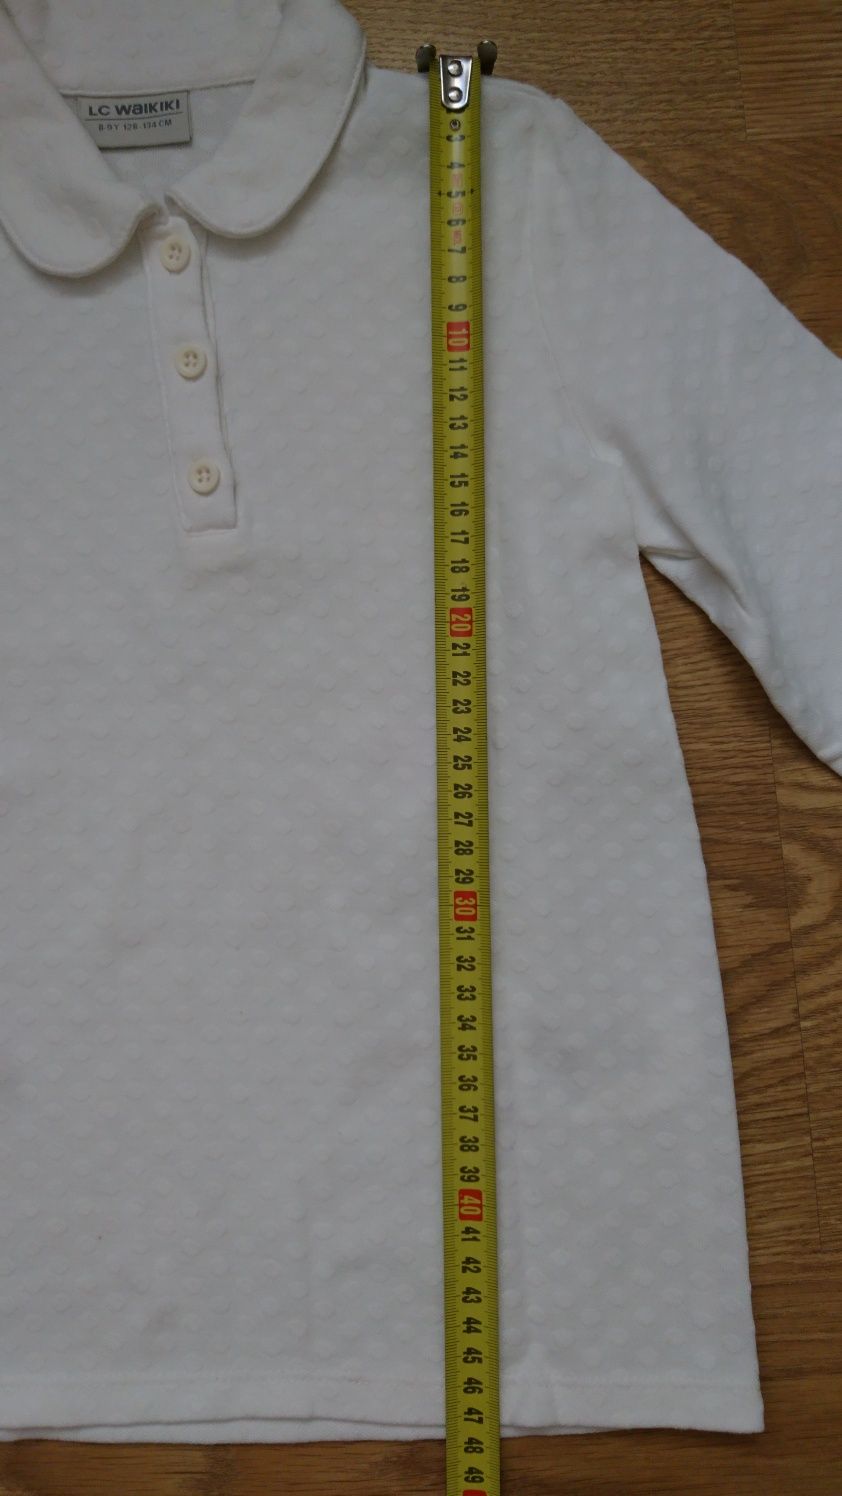 Белая рубашка LC WAIKIKI для девочки 134, кофта, джемпер, сорочка